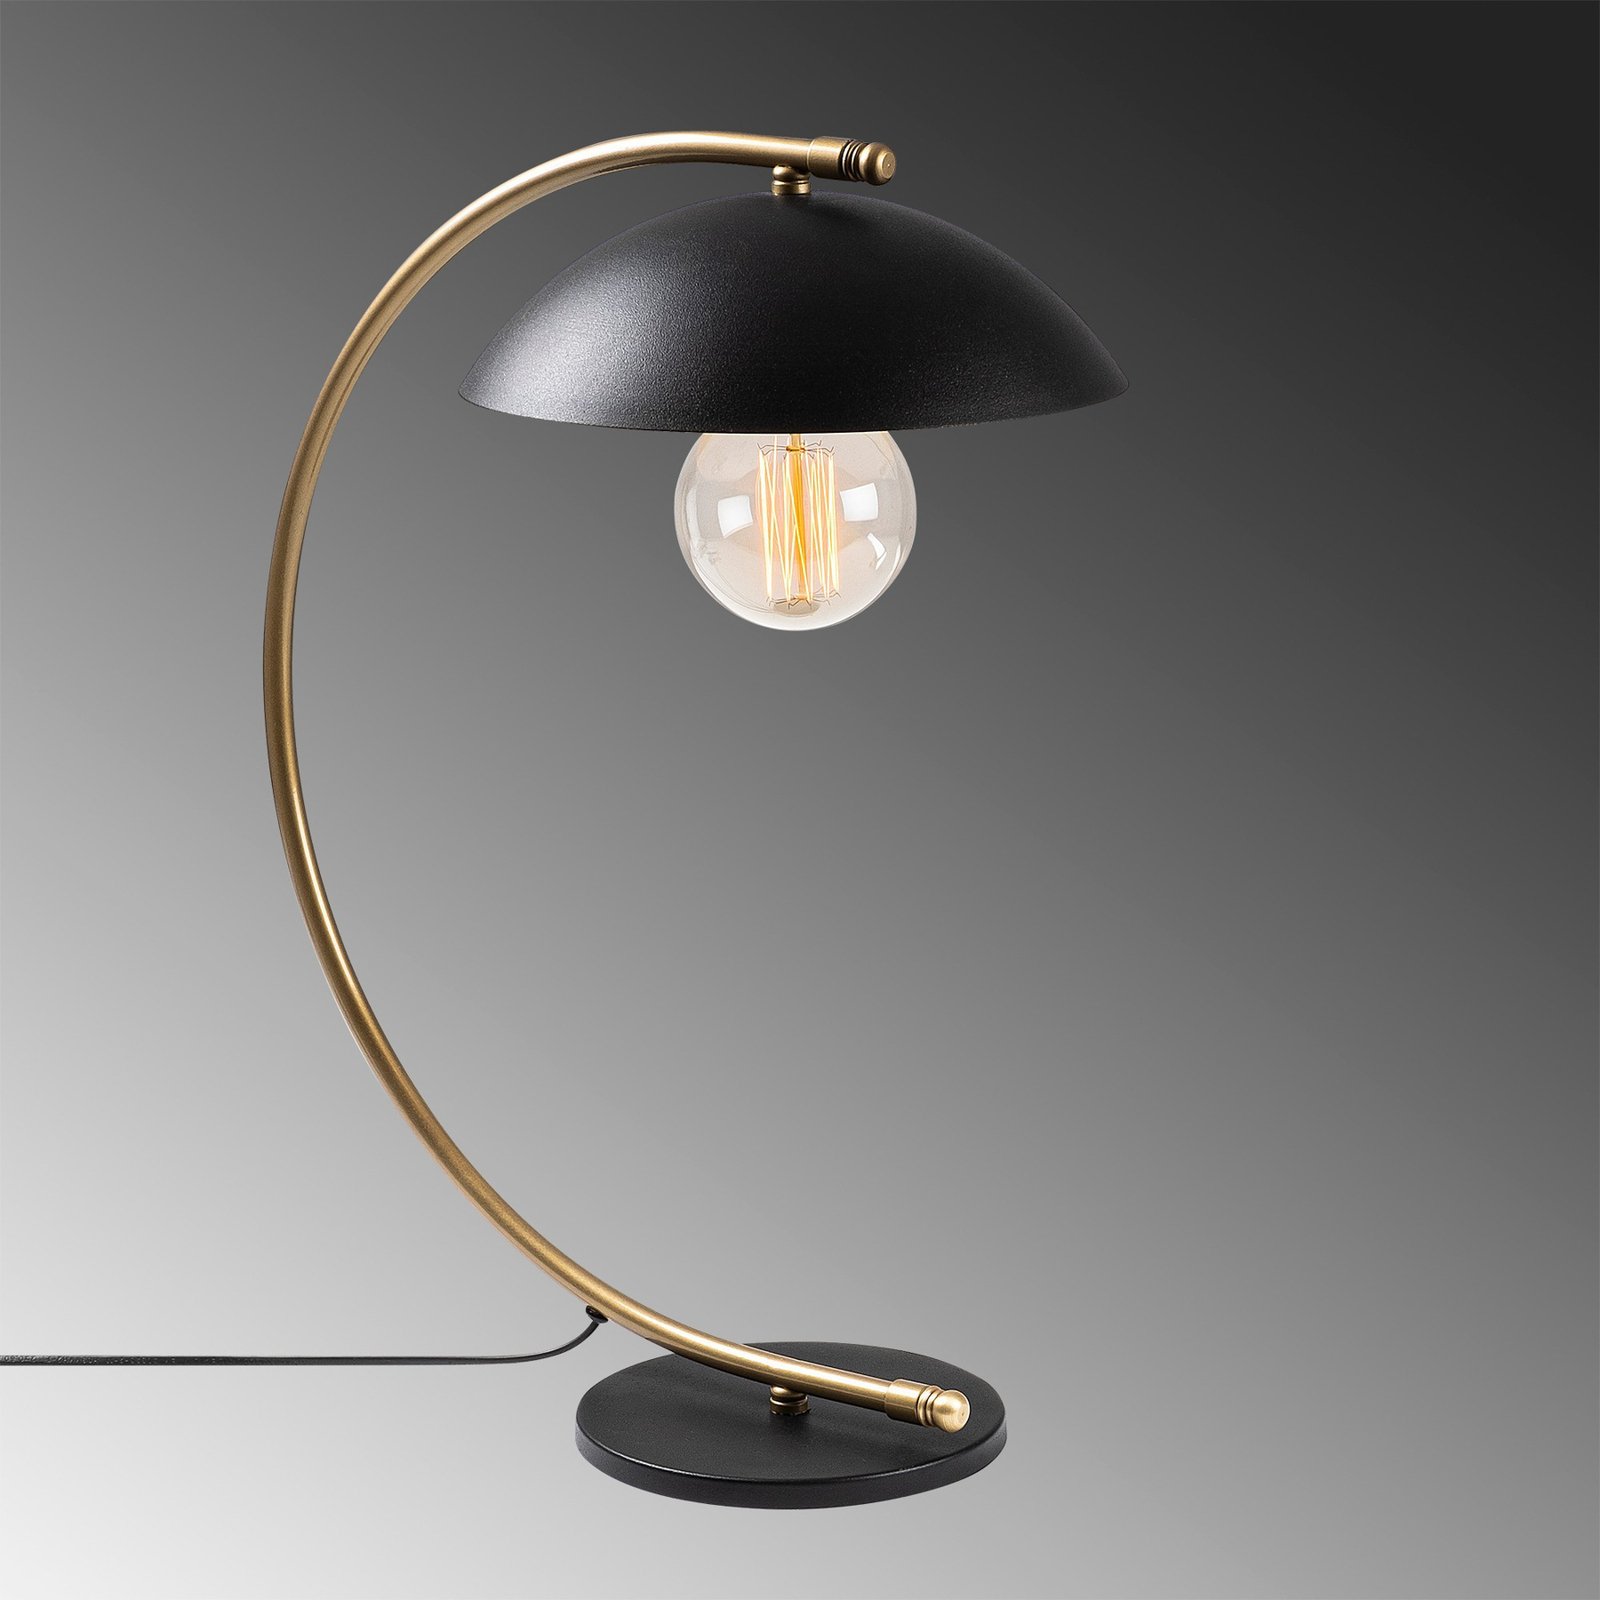 Stolní lampa Sivani NT-150, zlatá obloukový stojan